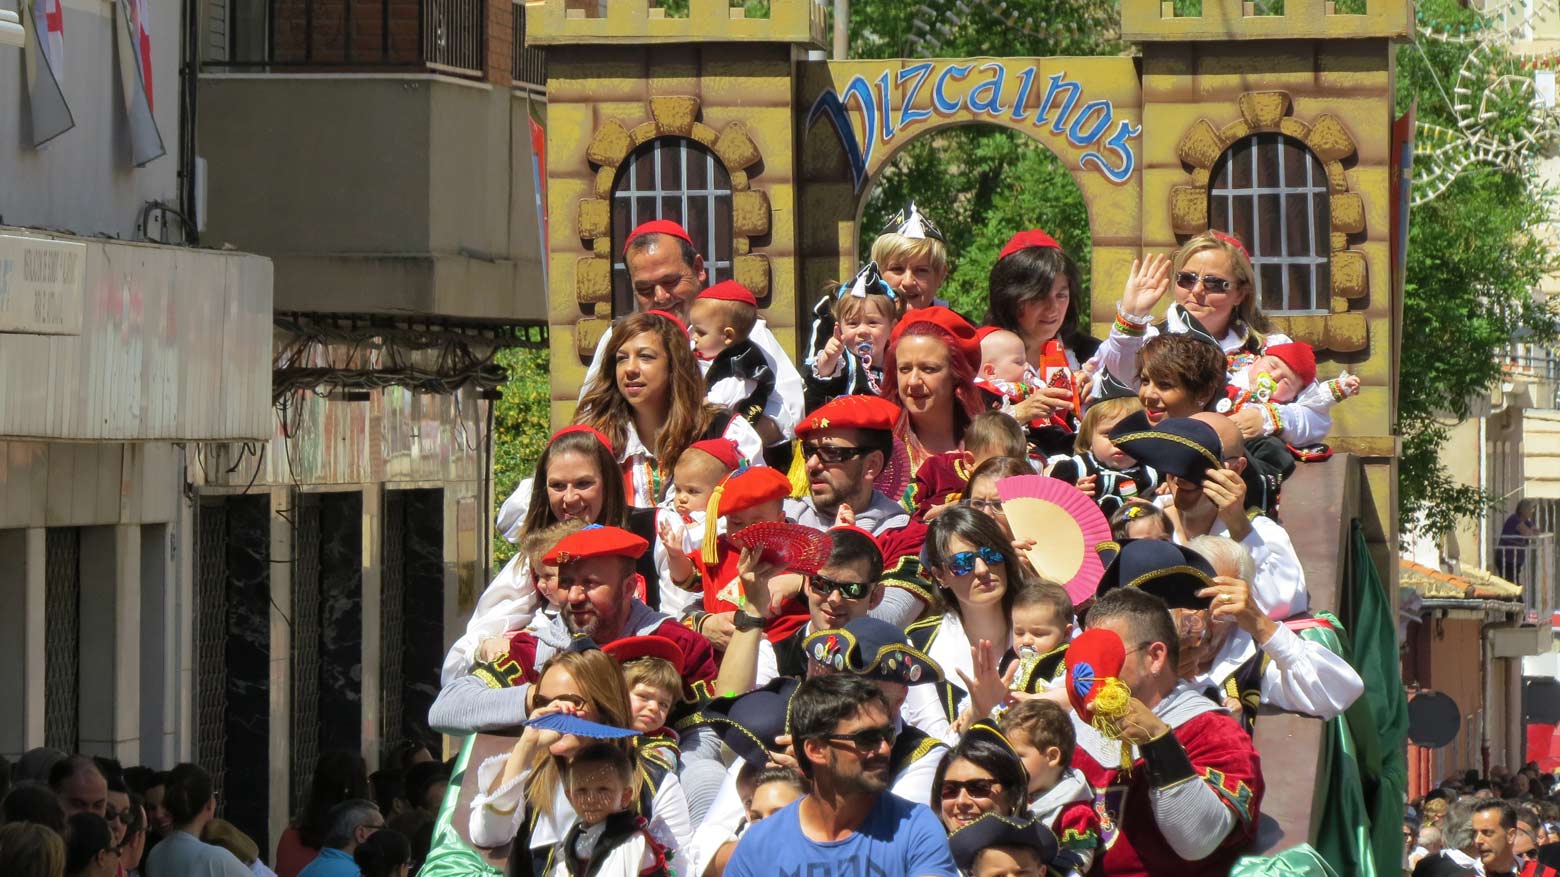 Los festeros benjamines protagonizaron el primer desfile de las fiestas.